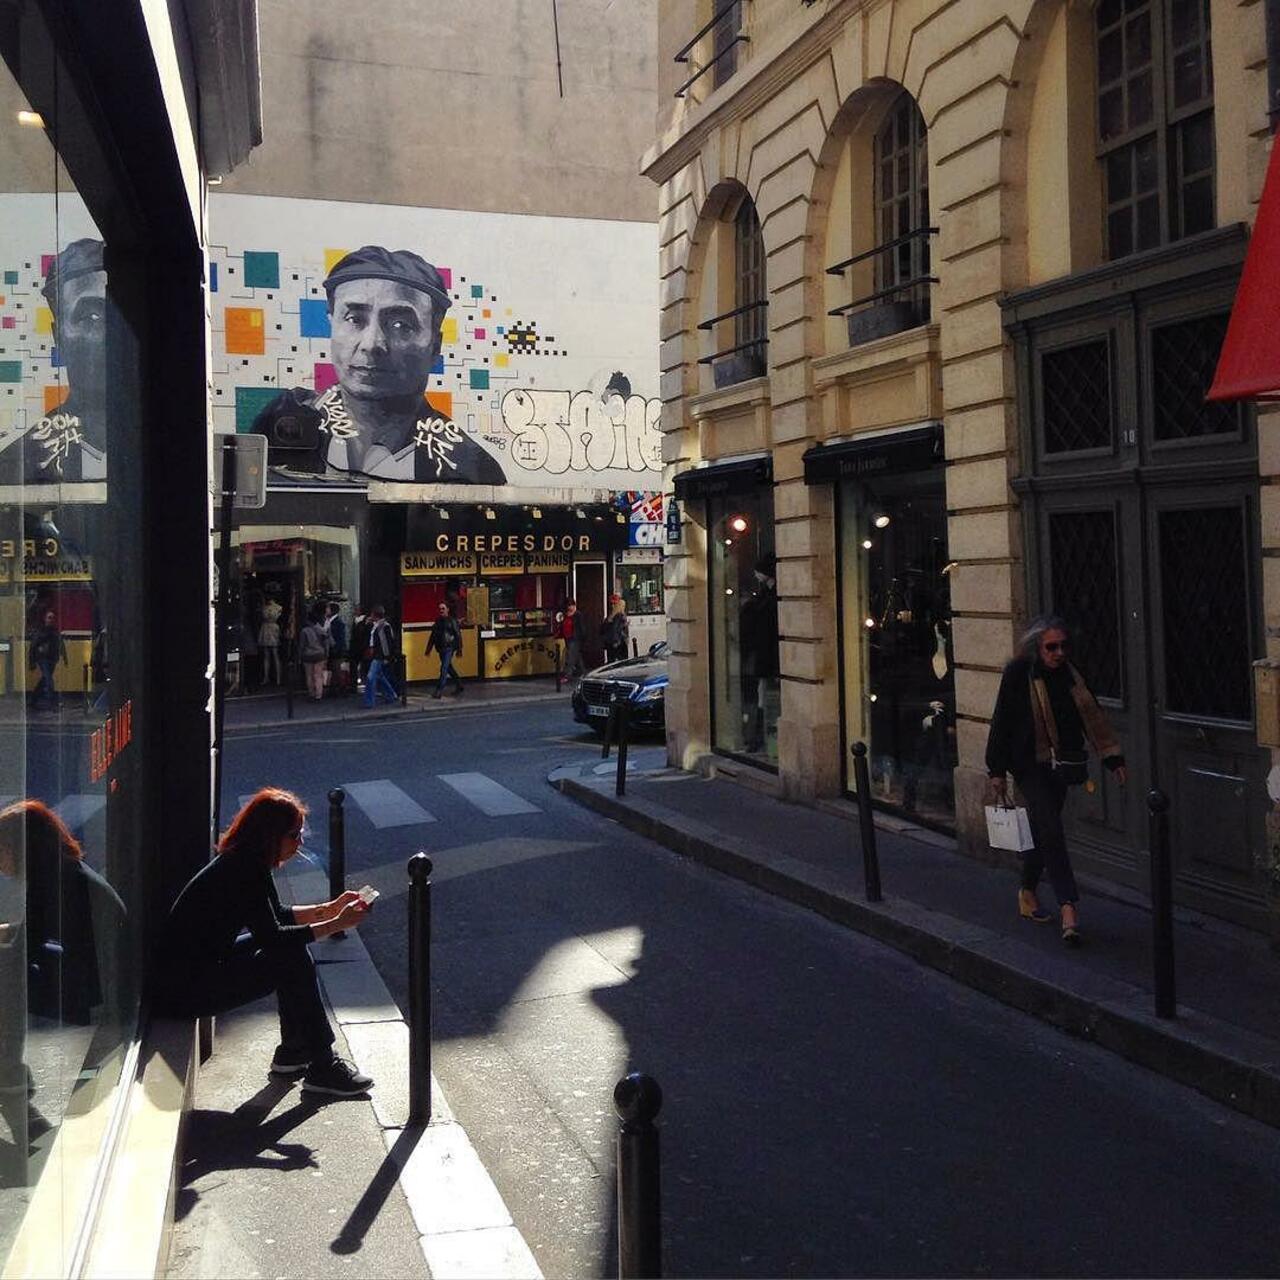 #Paris #graffiti photo by @fleurs.de.sel http://ift.tt/1MRdeXx #StreetArt http://t.co/DP4iqGllWK